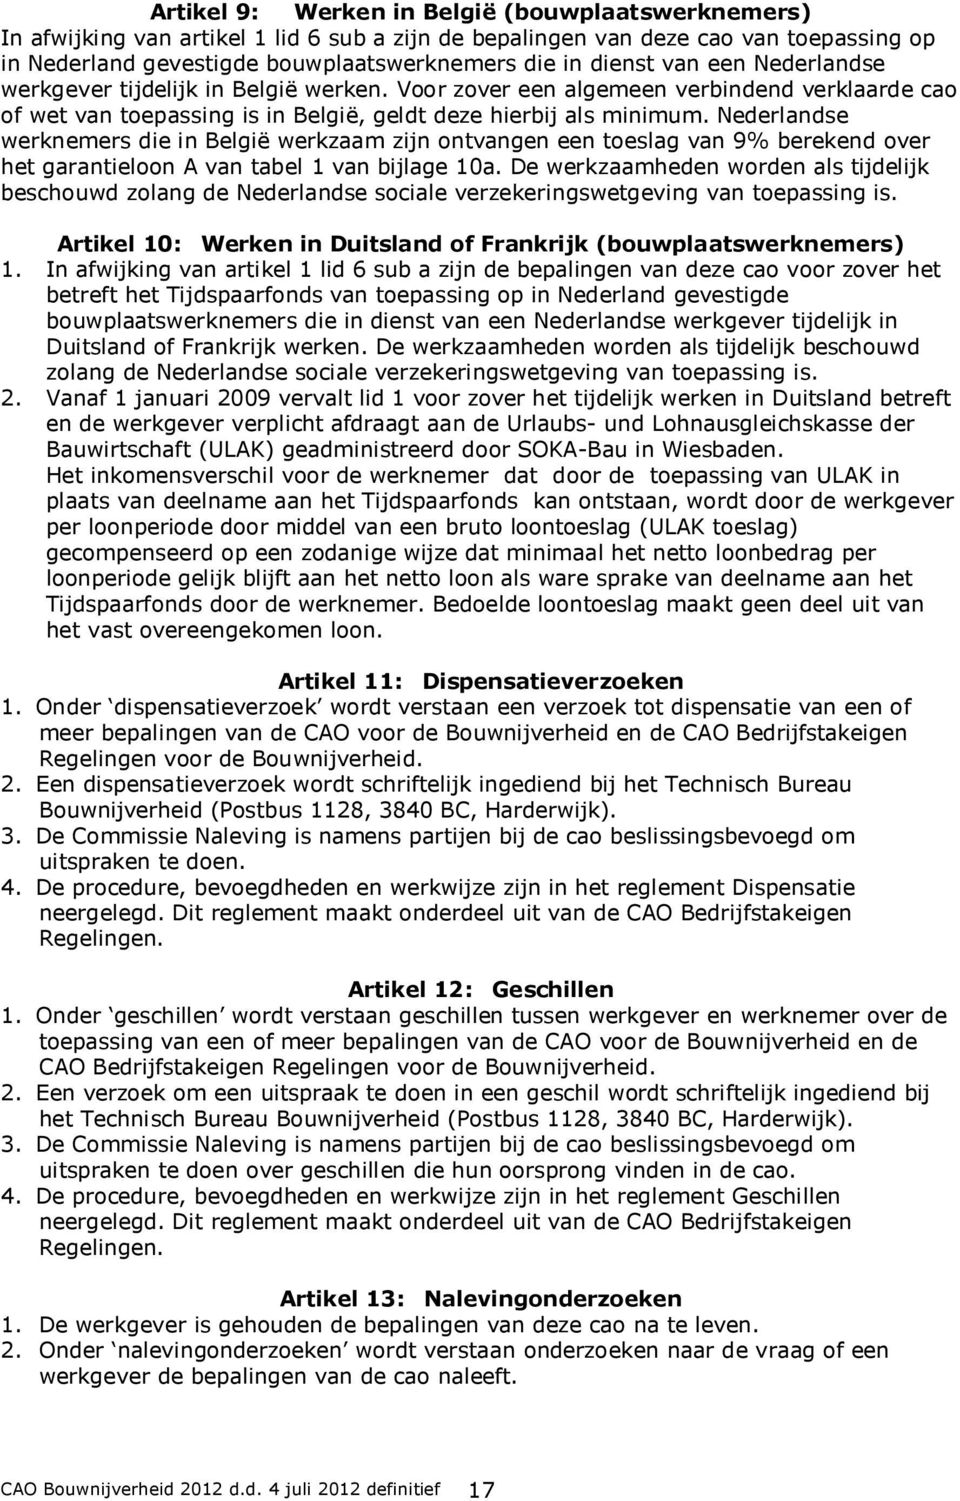 Nederlandse werknemers die in België werkzaam zijn ontvangen een toeslag van 9% berekend over het garantieloon A van tabel 1 van bijlage 10a.